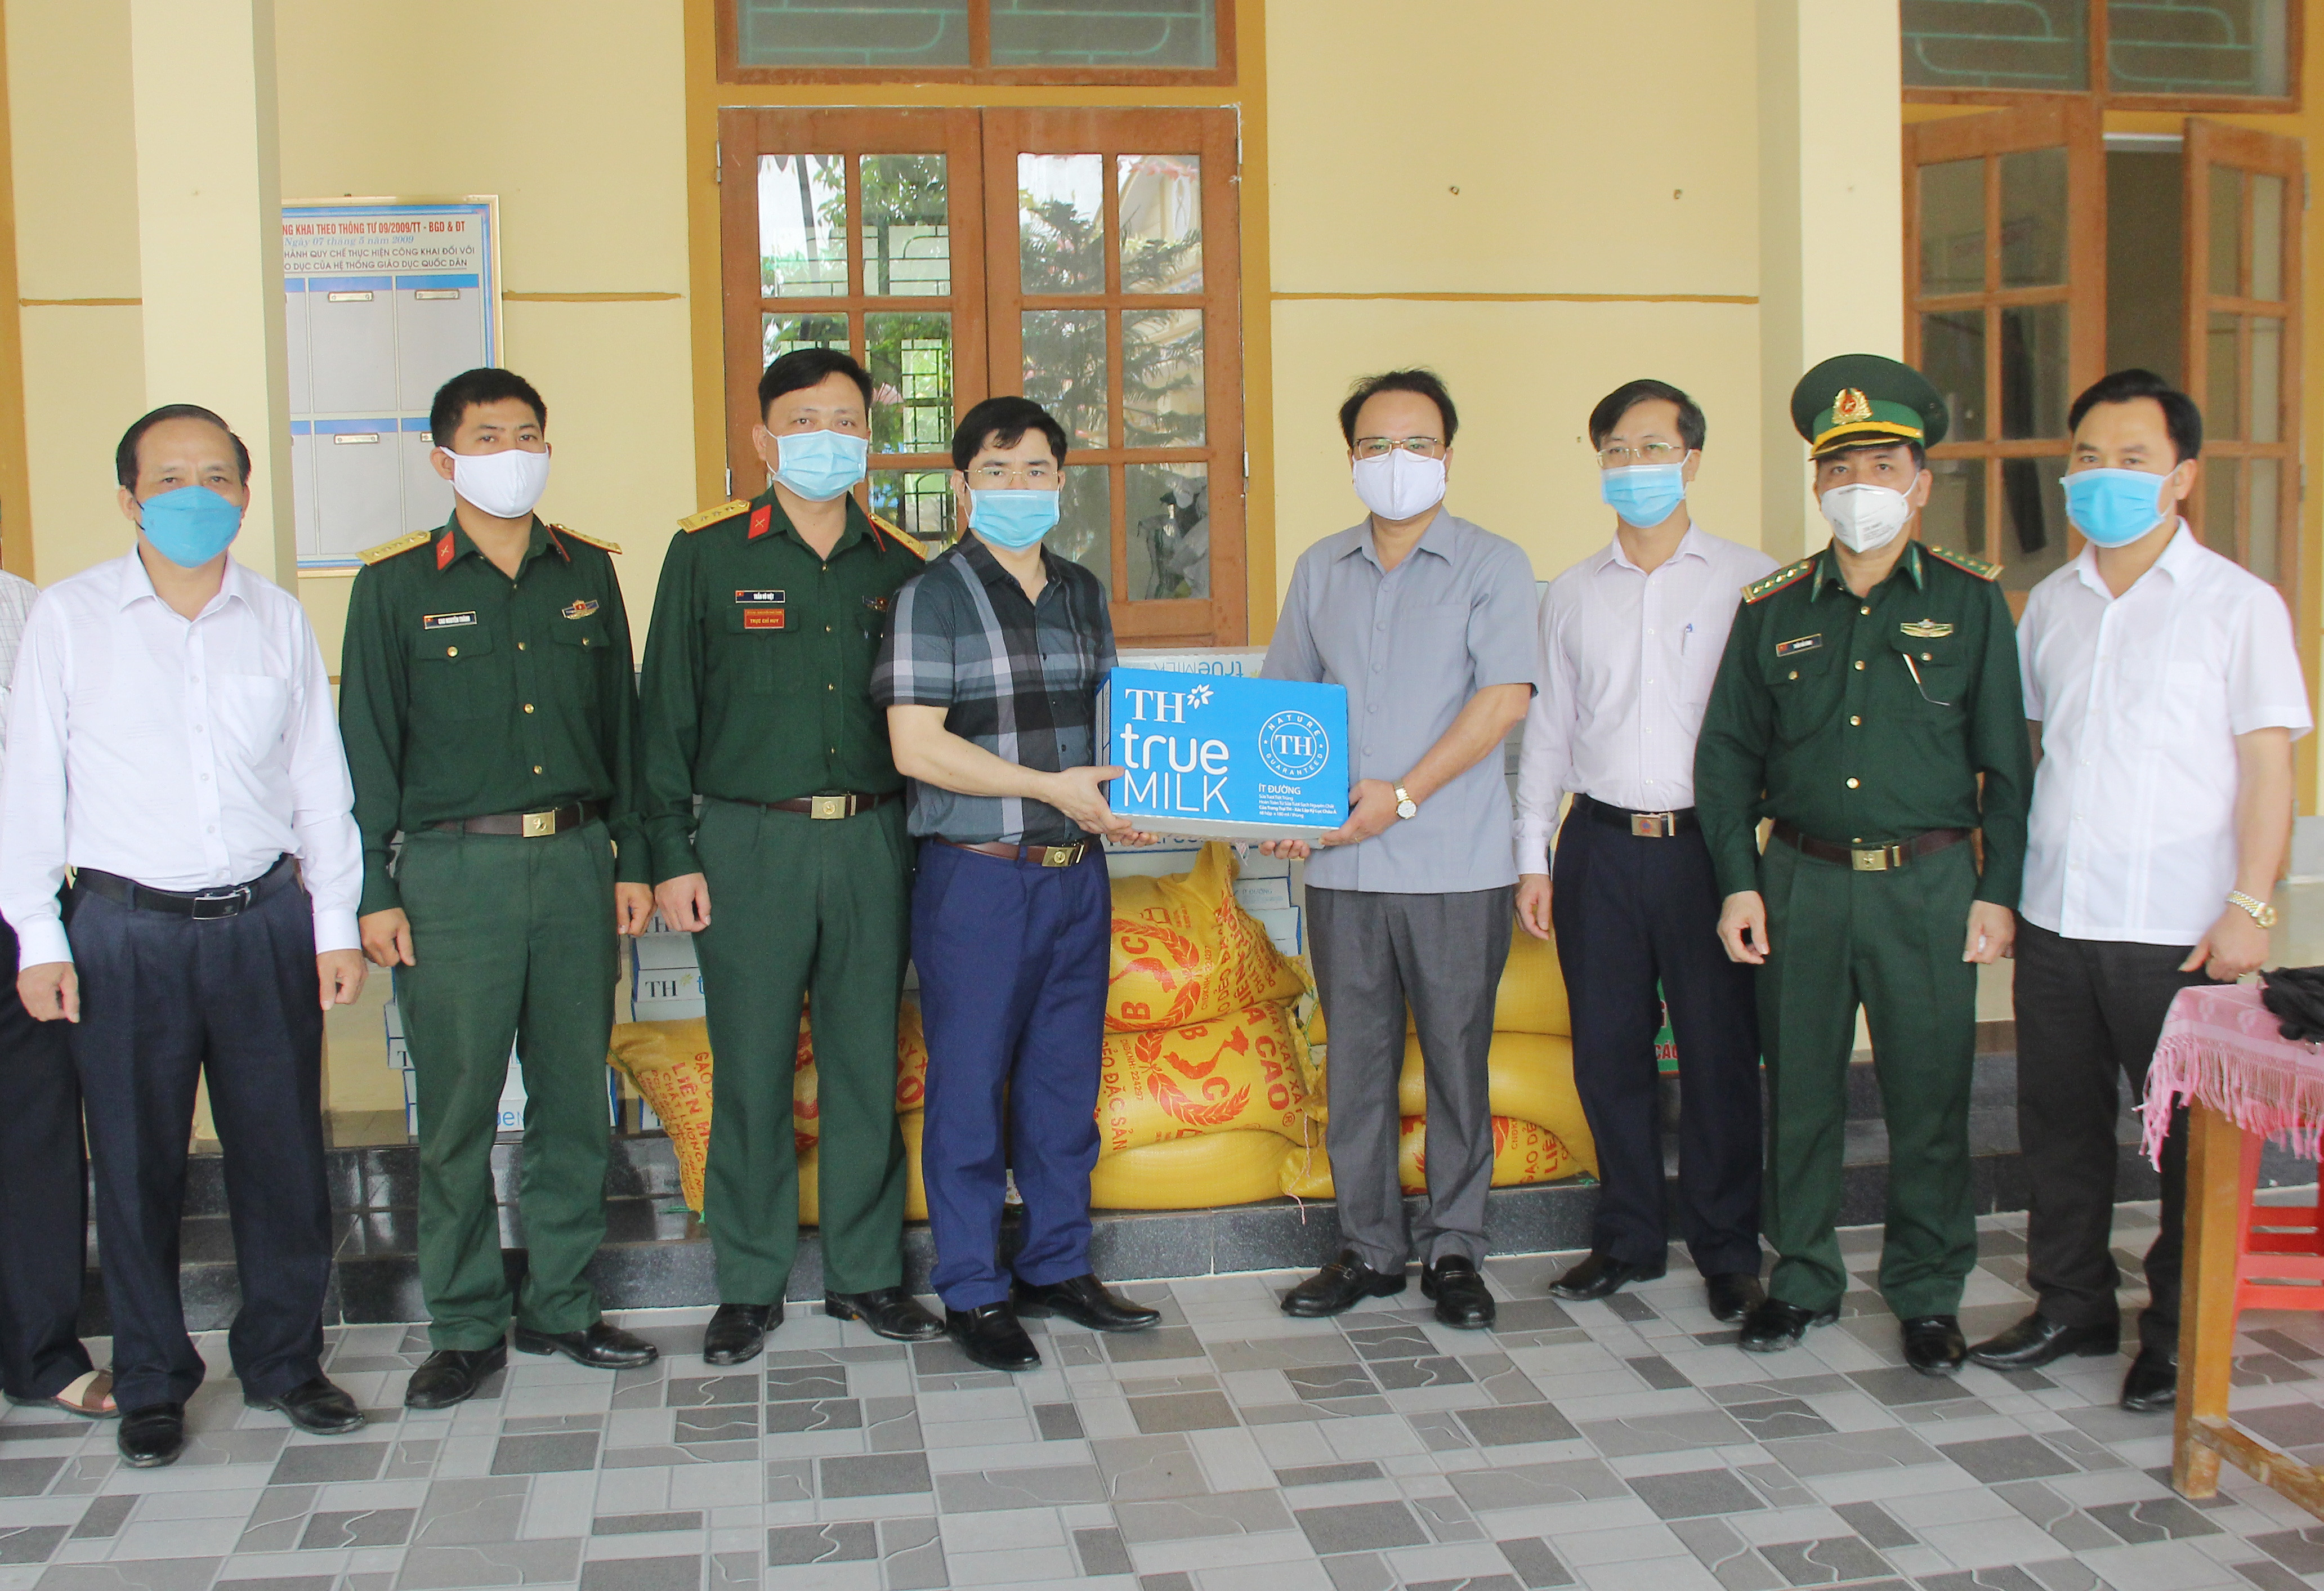 Dịp này, đoàn công tác của tỉnh cũng đã tặng quà động viên các lực lượng đang phục vụ nhân dân tại điểm cách ly tập trung ở xã Đại Đồng, huyện Thanh Chương. Ảnh: Mai Hoa